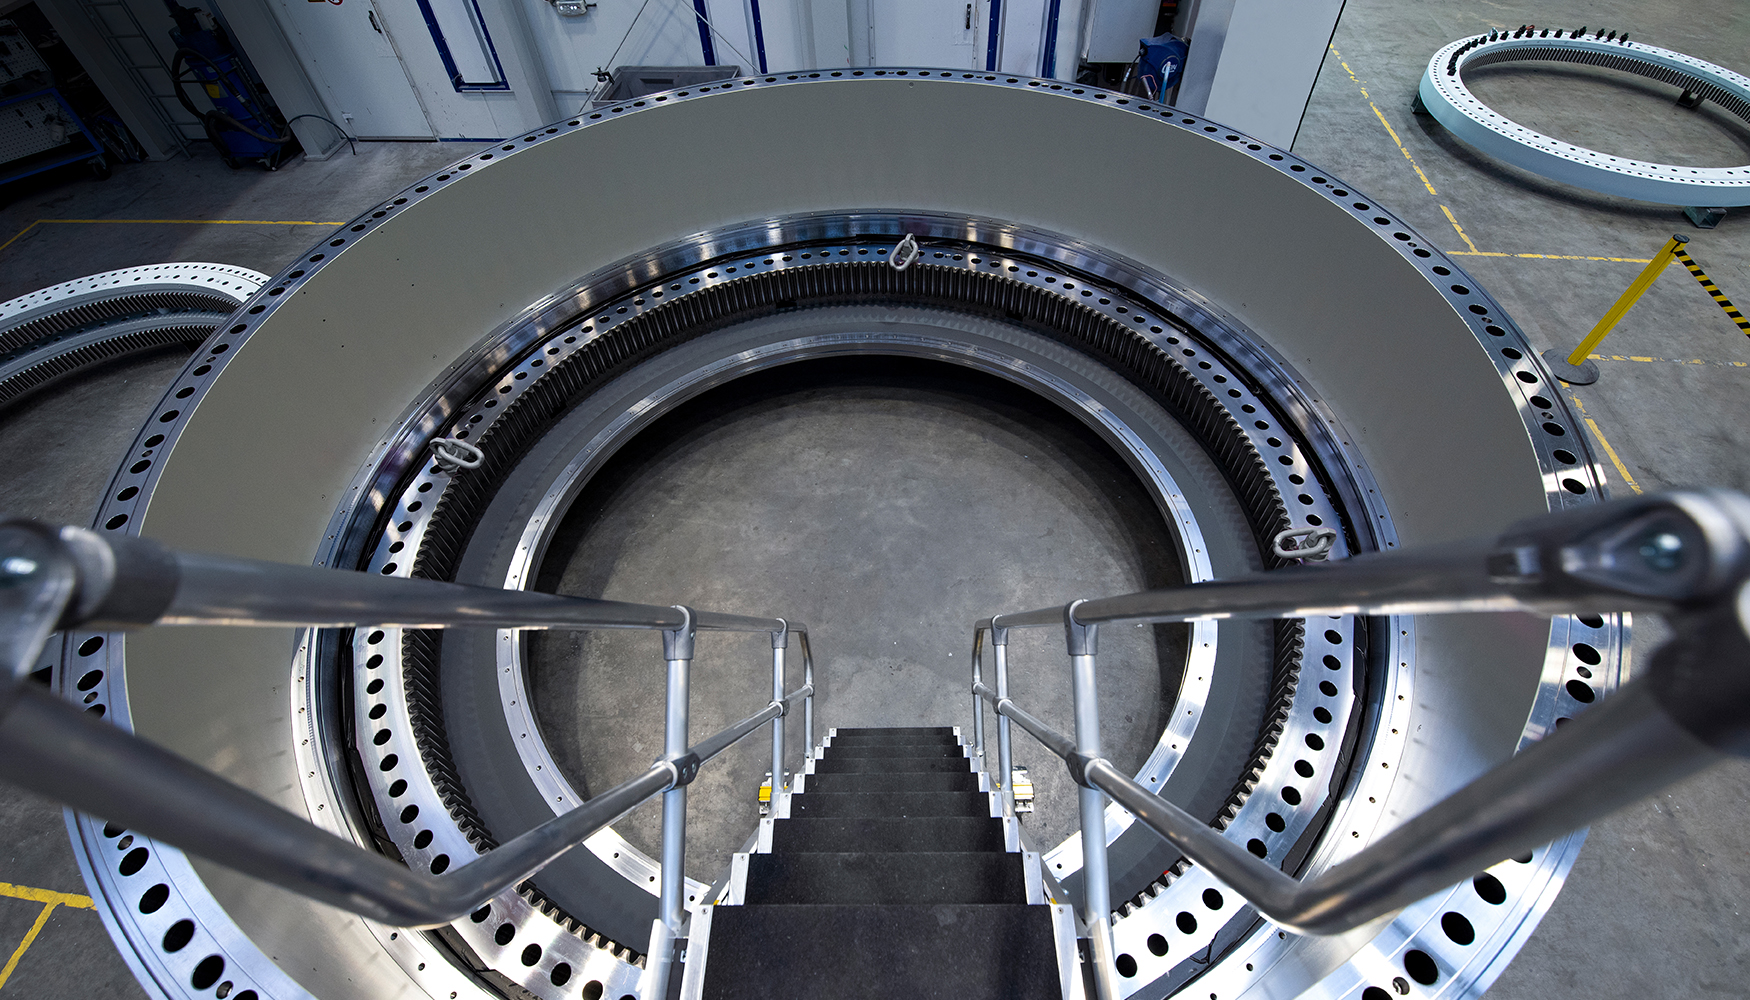 Dimensiones impresionantes: el interior del rodamiento de gran tamao para aplicaciones martimas es visible desde una escalera...